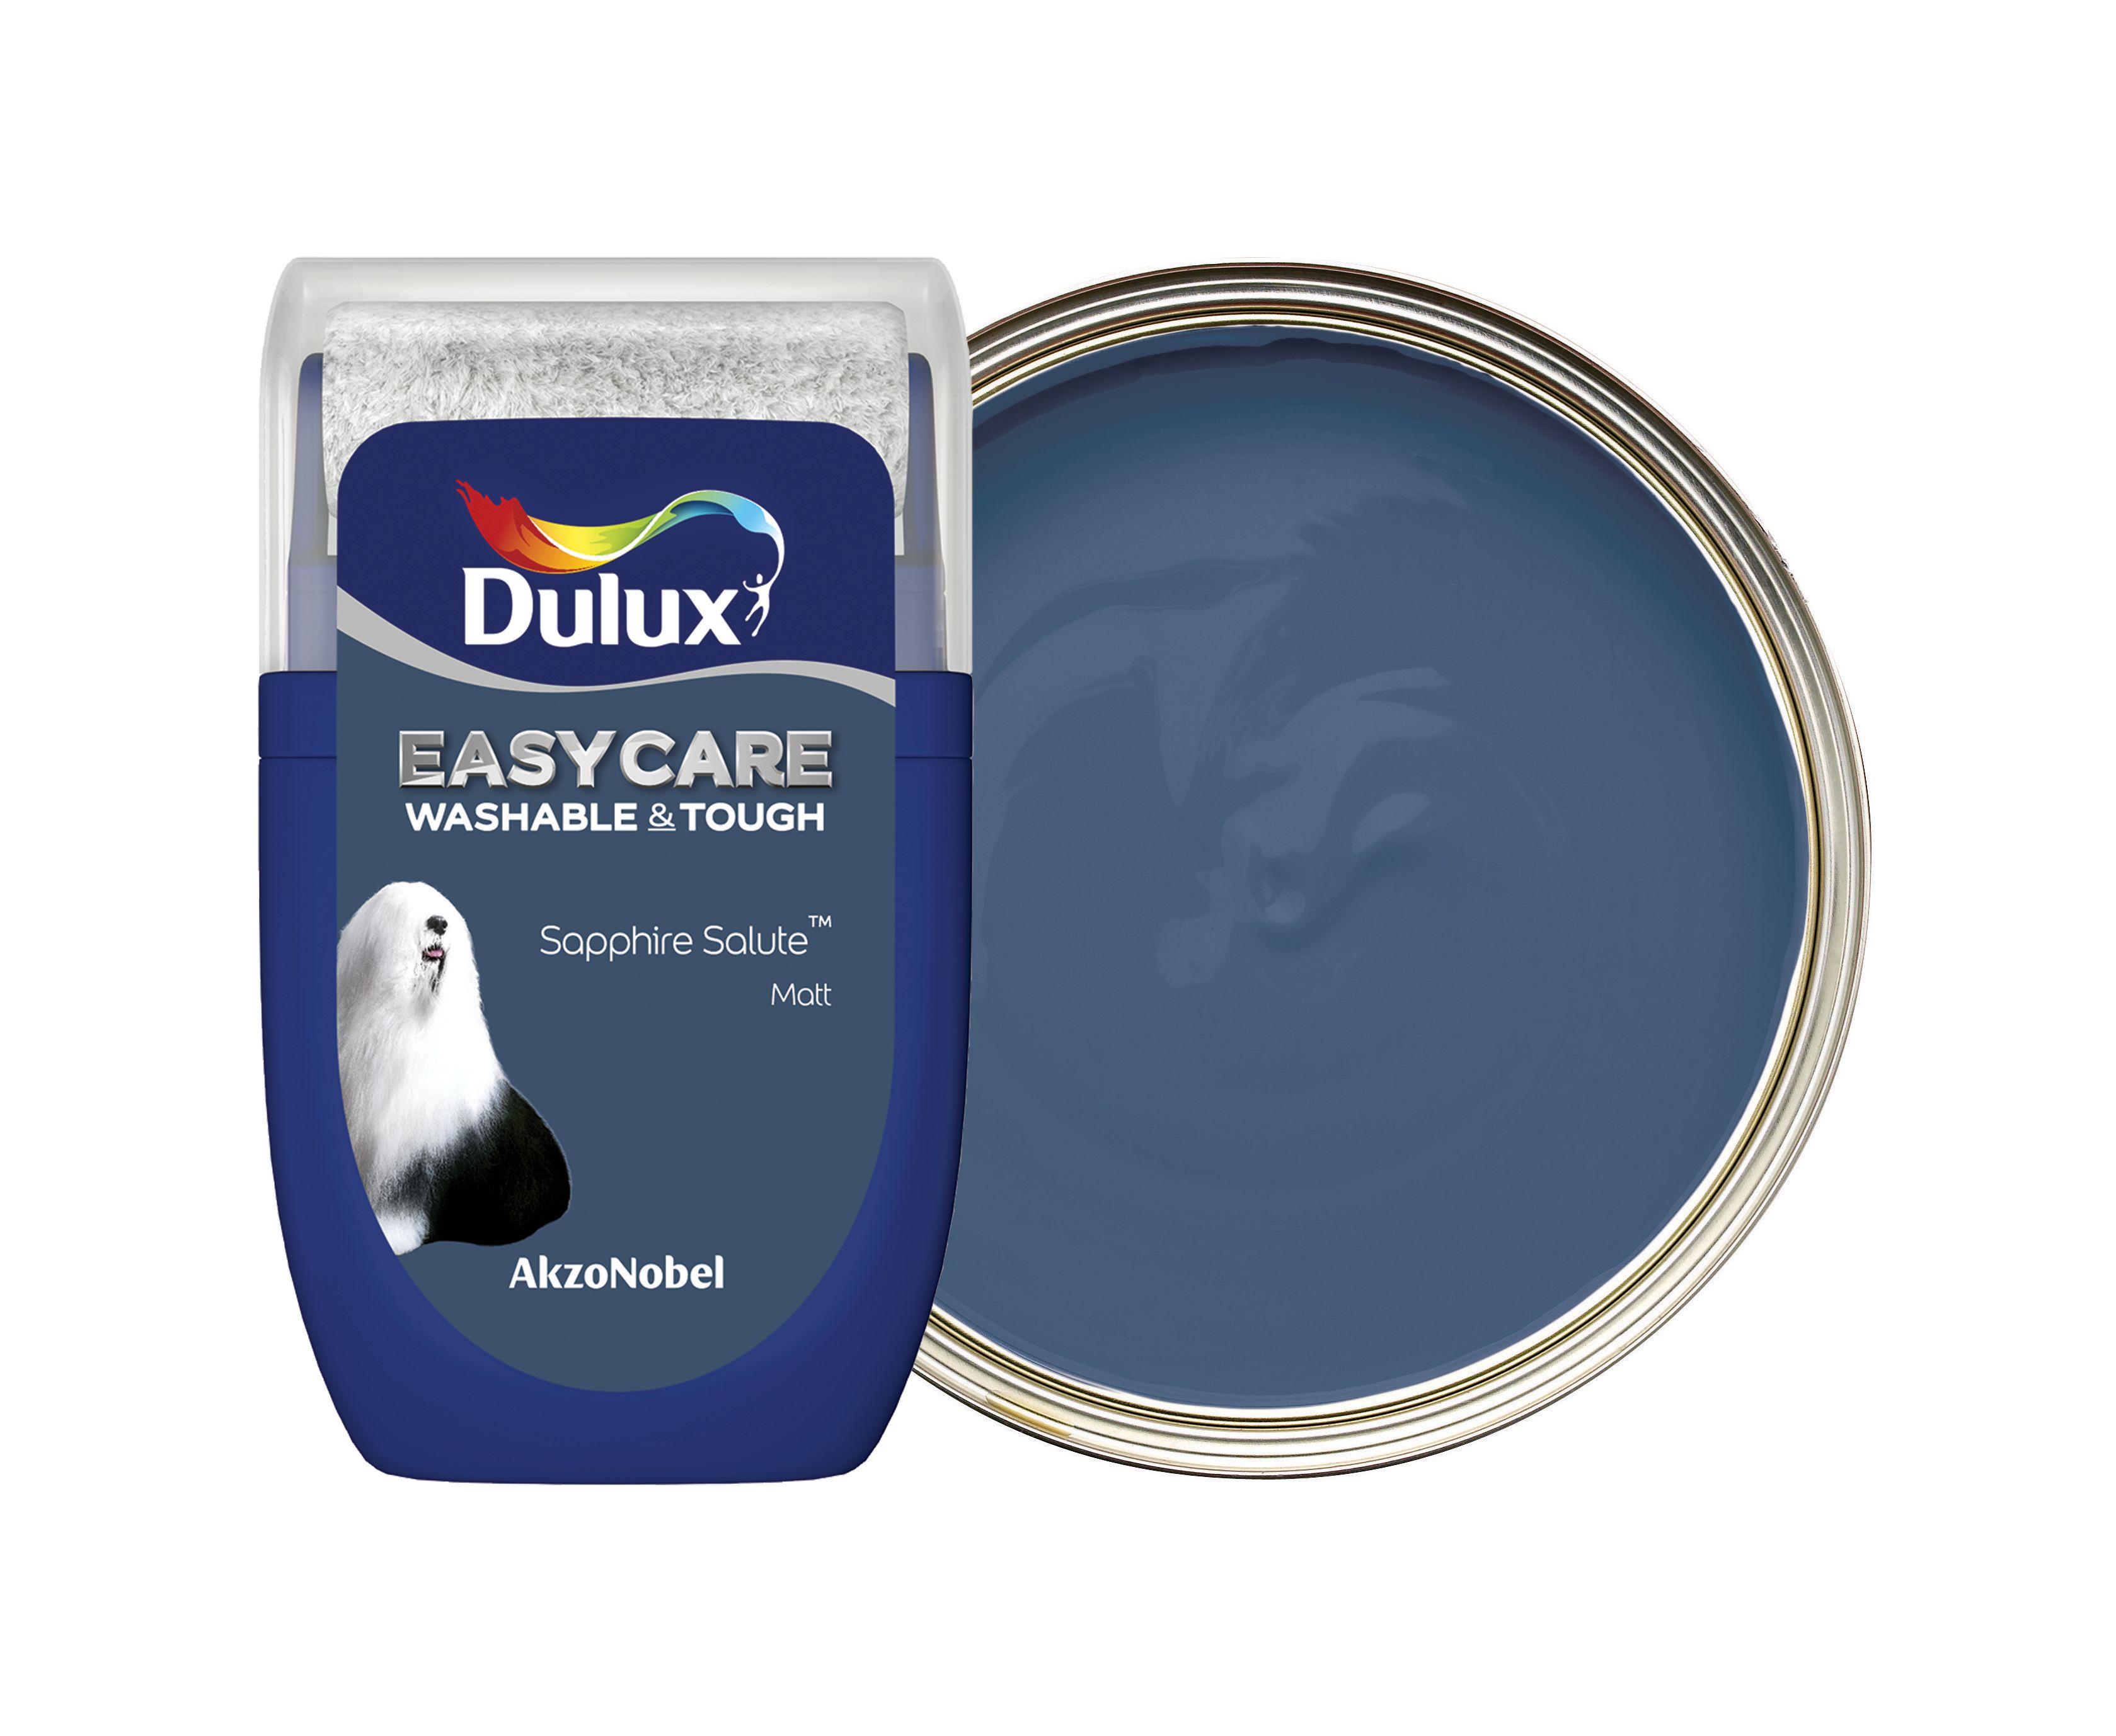 Dulux Easycare Washable & Tough Paint Tester Pot - Sapphire Salute - 30ml